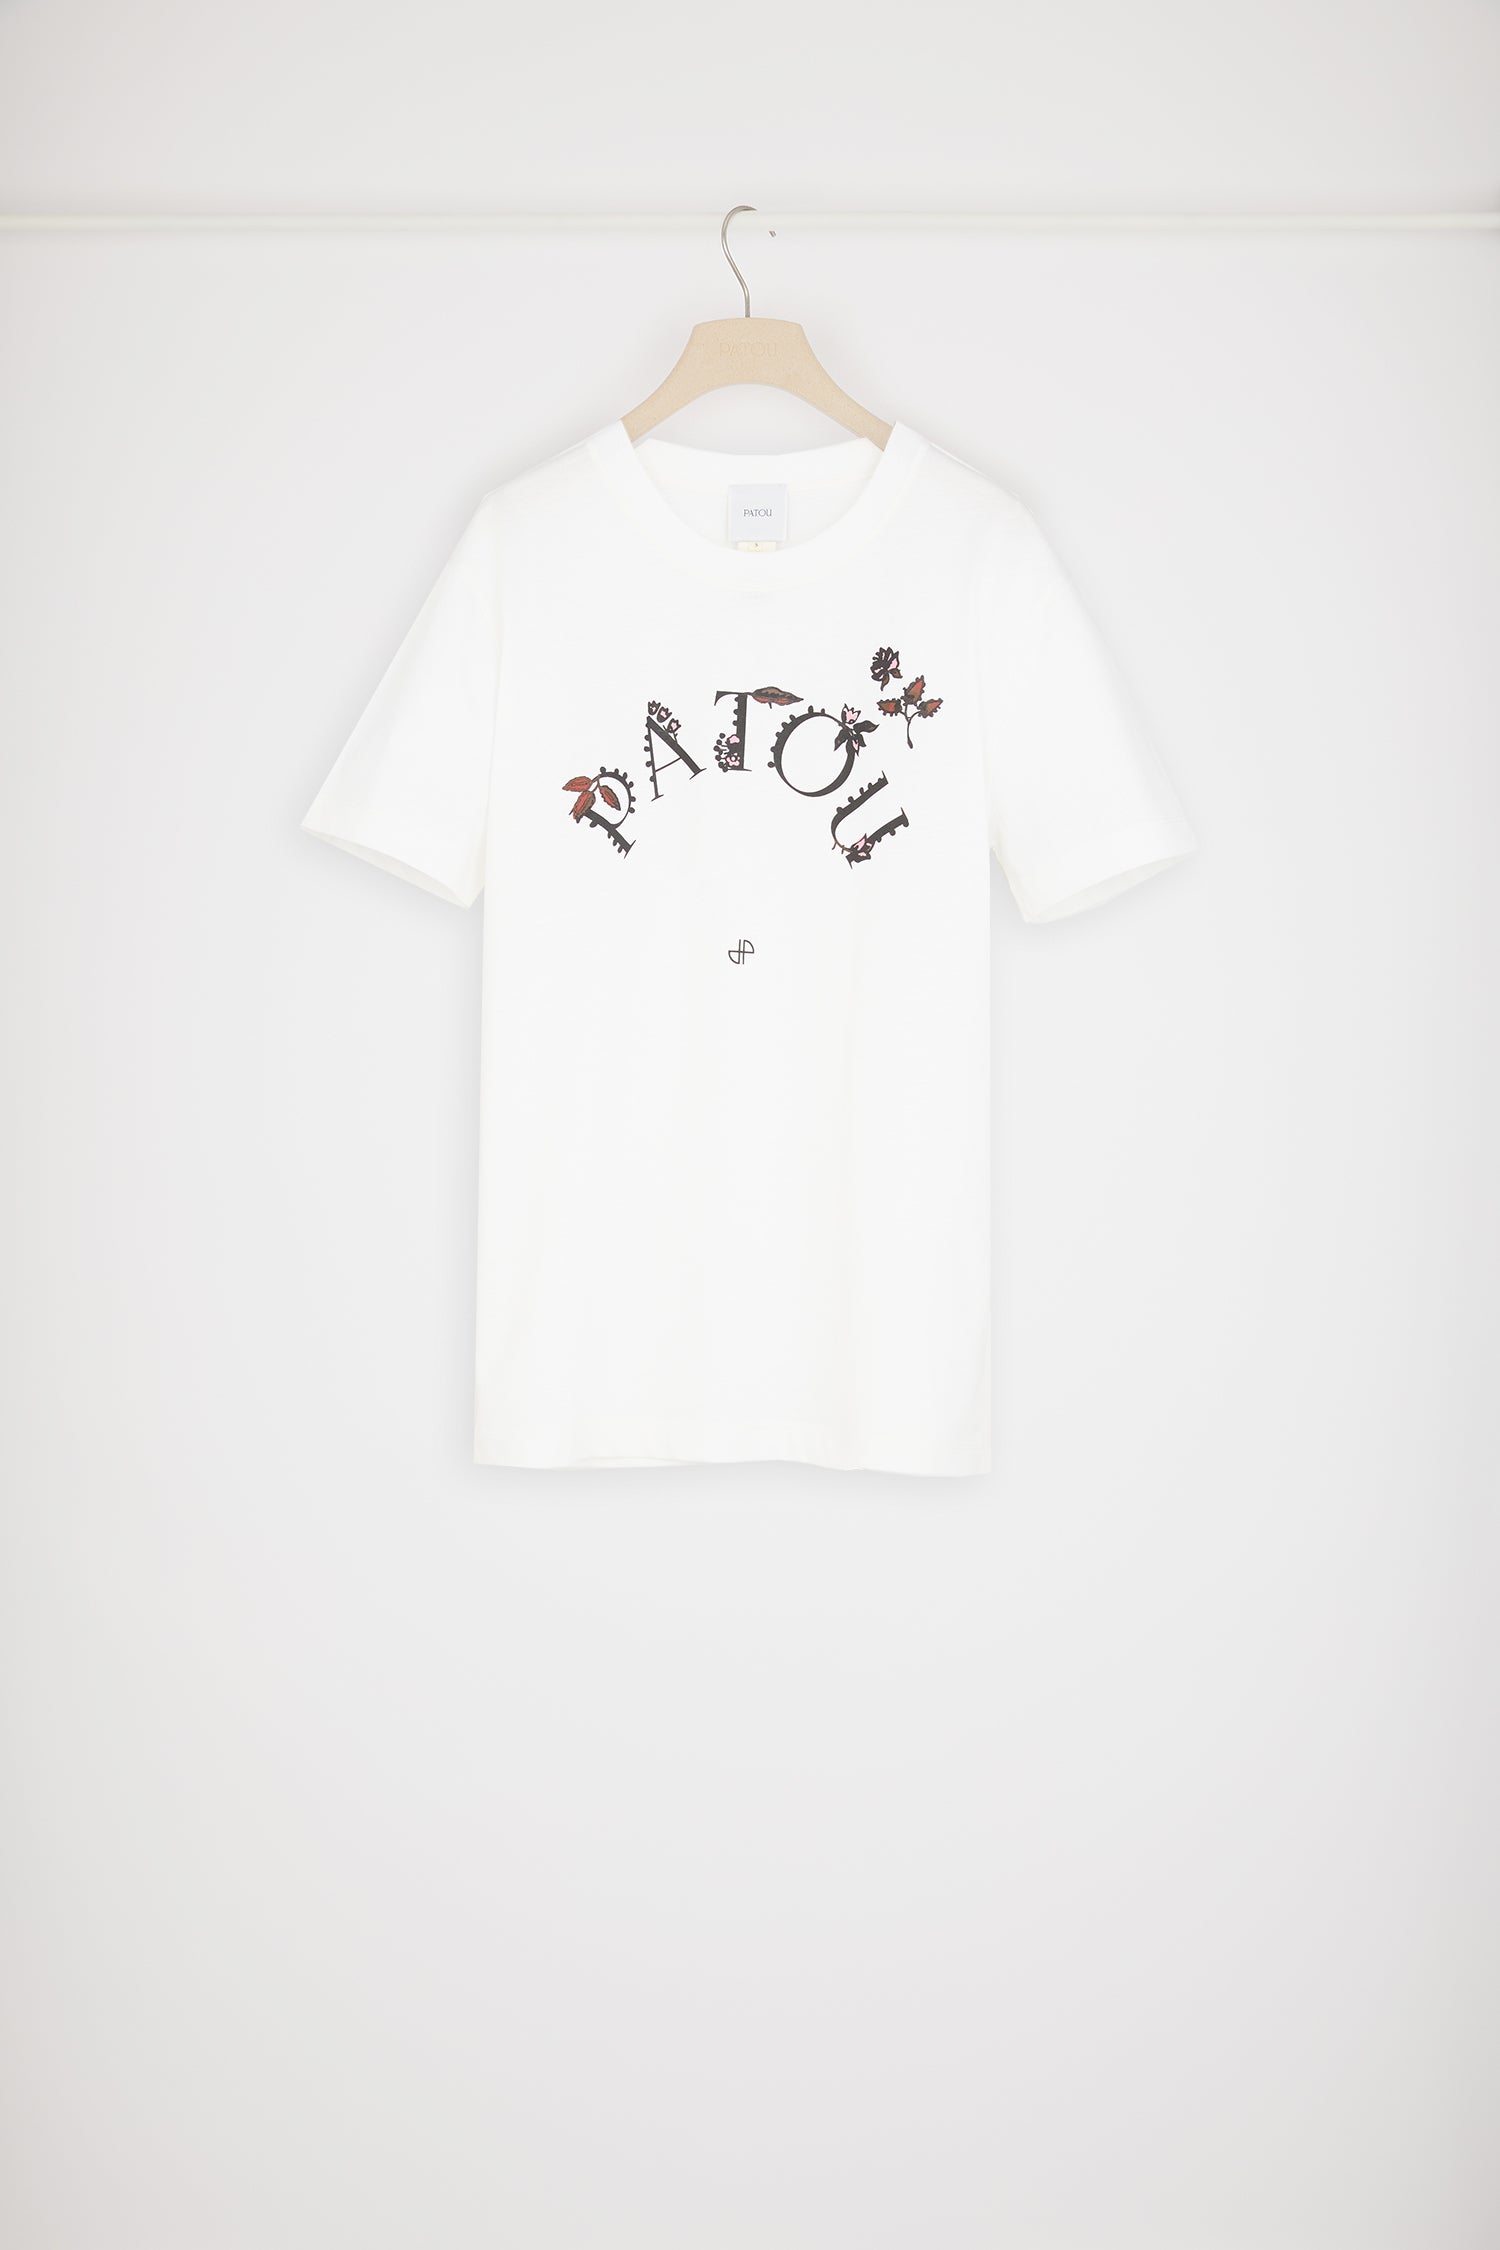 Patou | オーガニックコットン製フローラルパトゥカーブロゴTシャツ